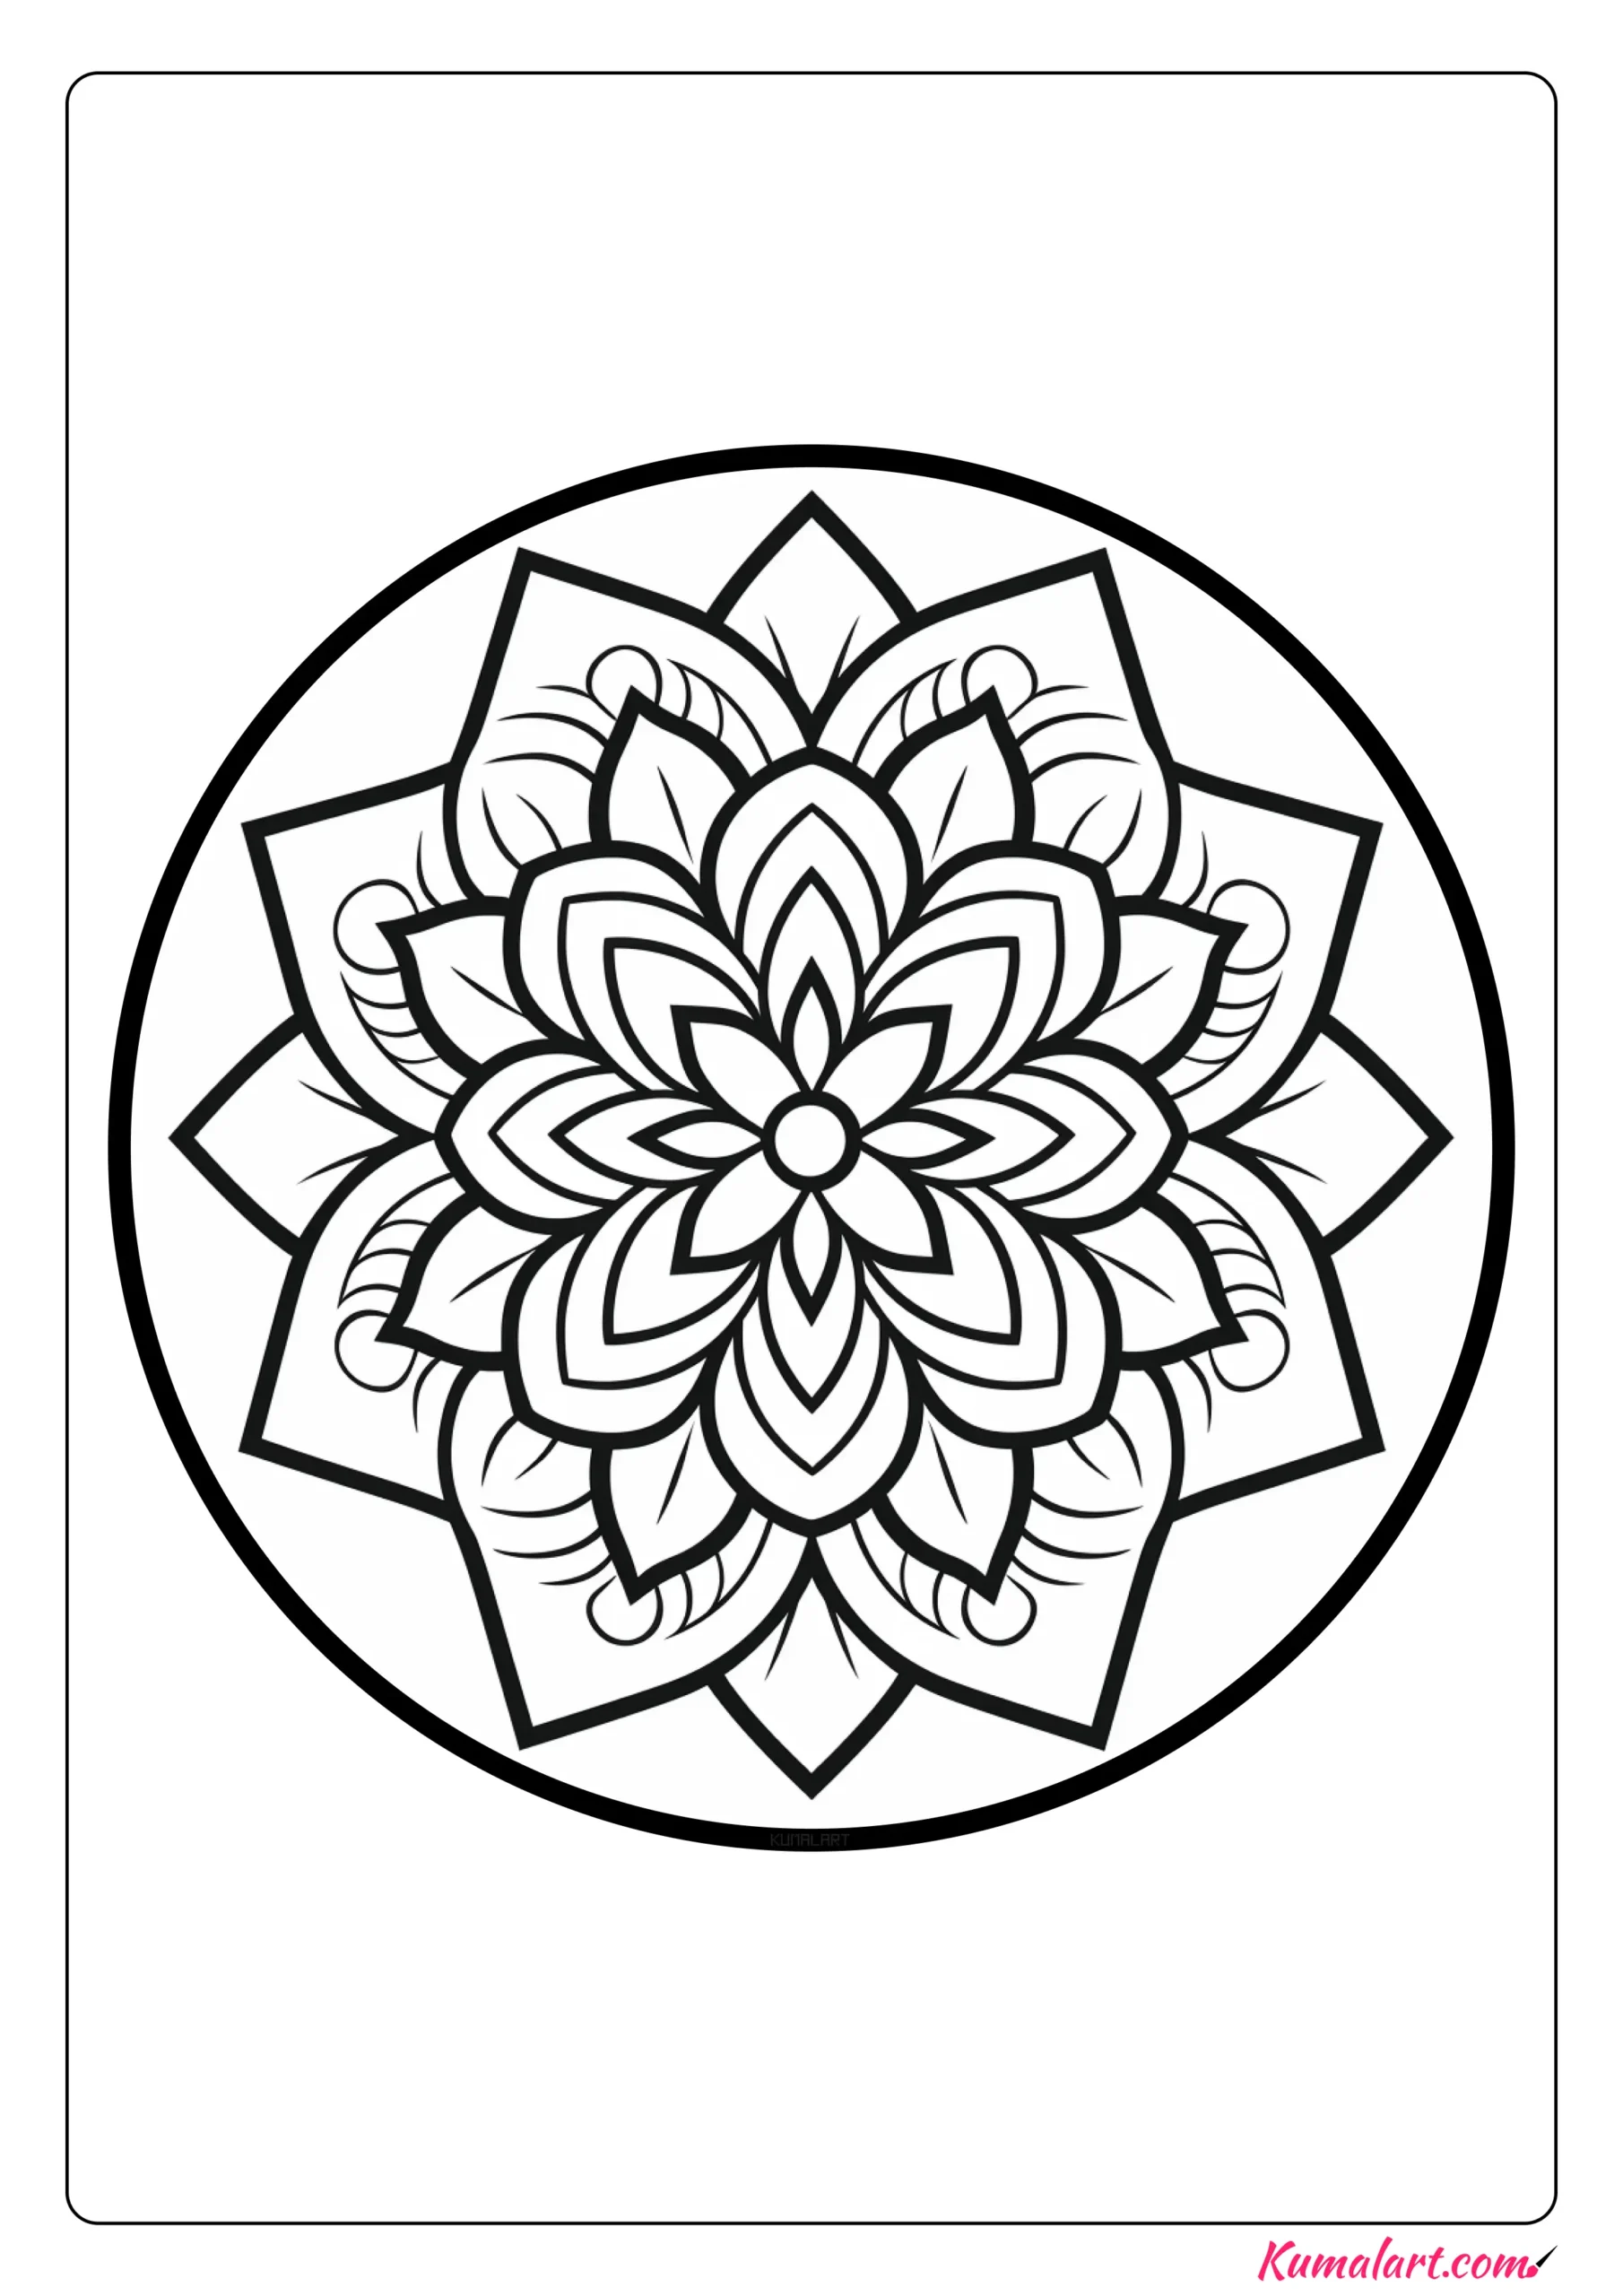 Kaleidoscope Lotus Flower Mandala Coloring Page